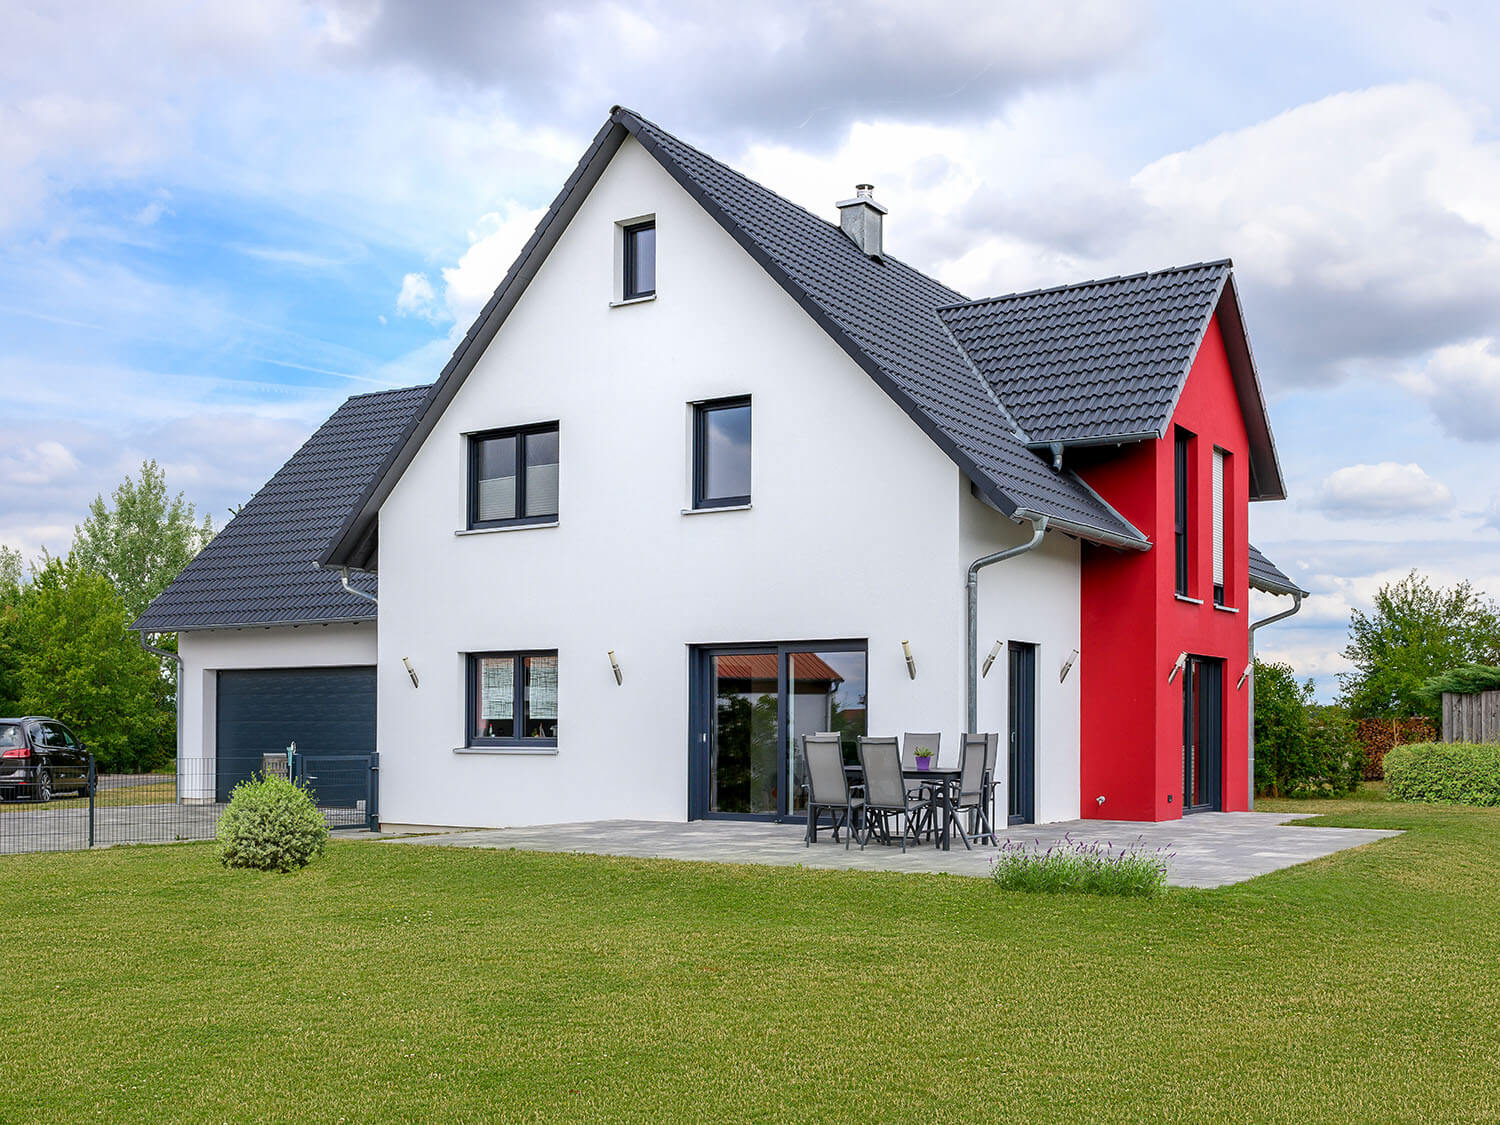 Einfamilienhaus mit Garage in Mausdorf nur H 252 lle aufgestellt Engelhardt Geissbauer